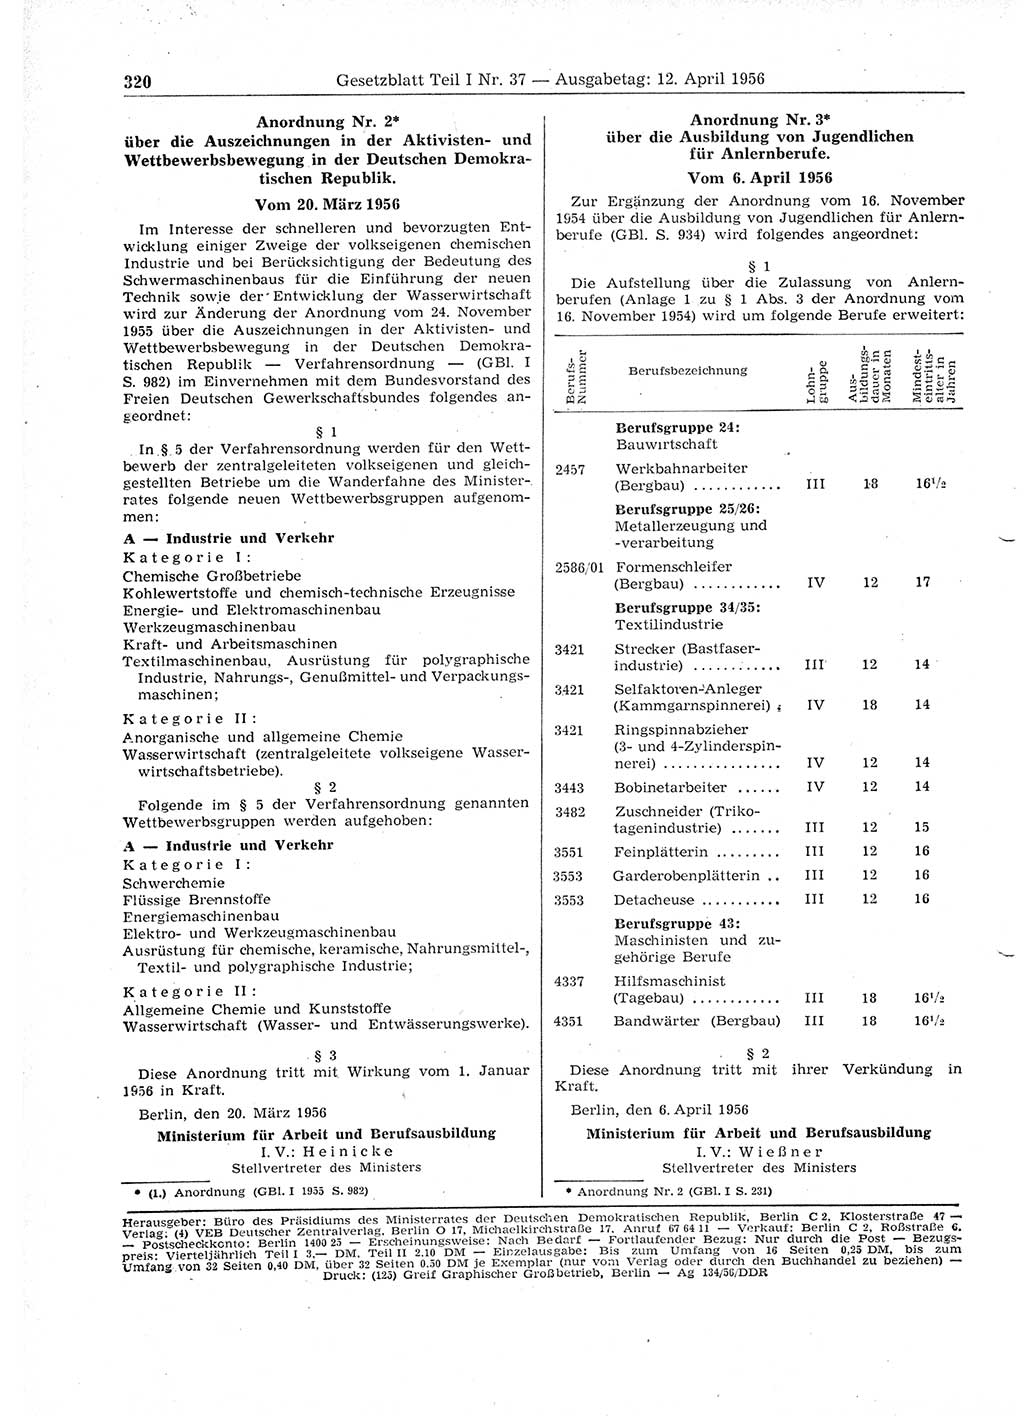 Gesetzblatt (GBl.) der Deutschen Demokratischen Republik (DDR) Teil Ⅰ 1956, Seite 320 (GBl. DDR Ⅰ 1956, S. 320)